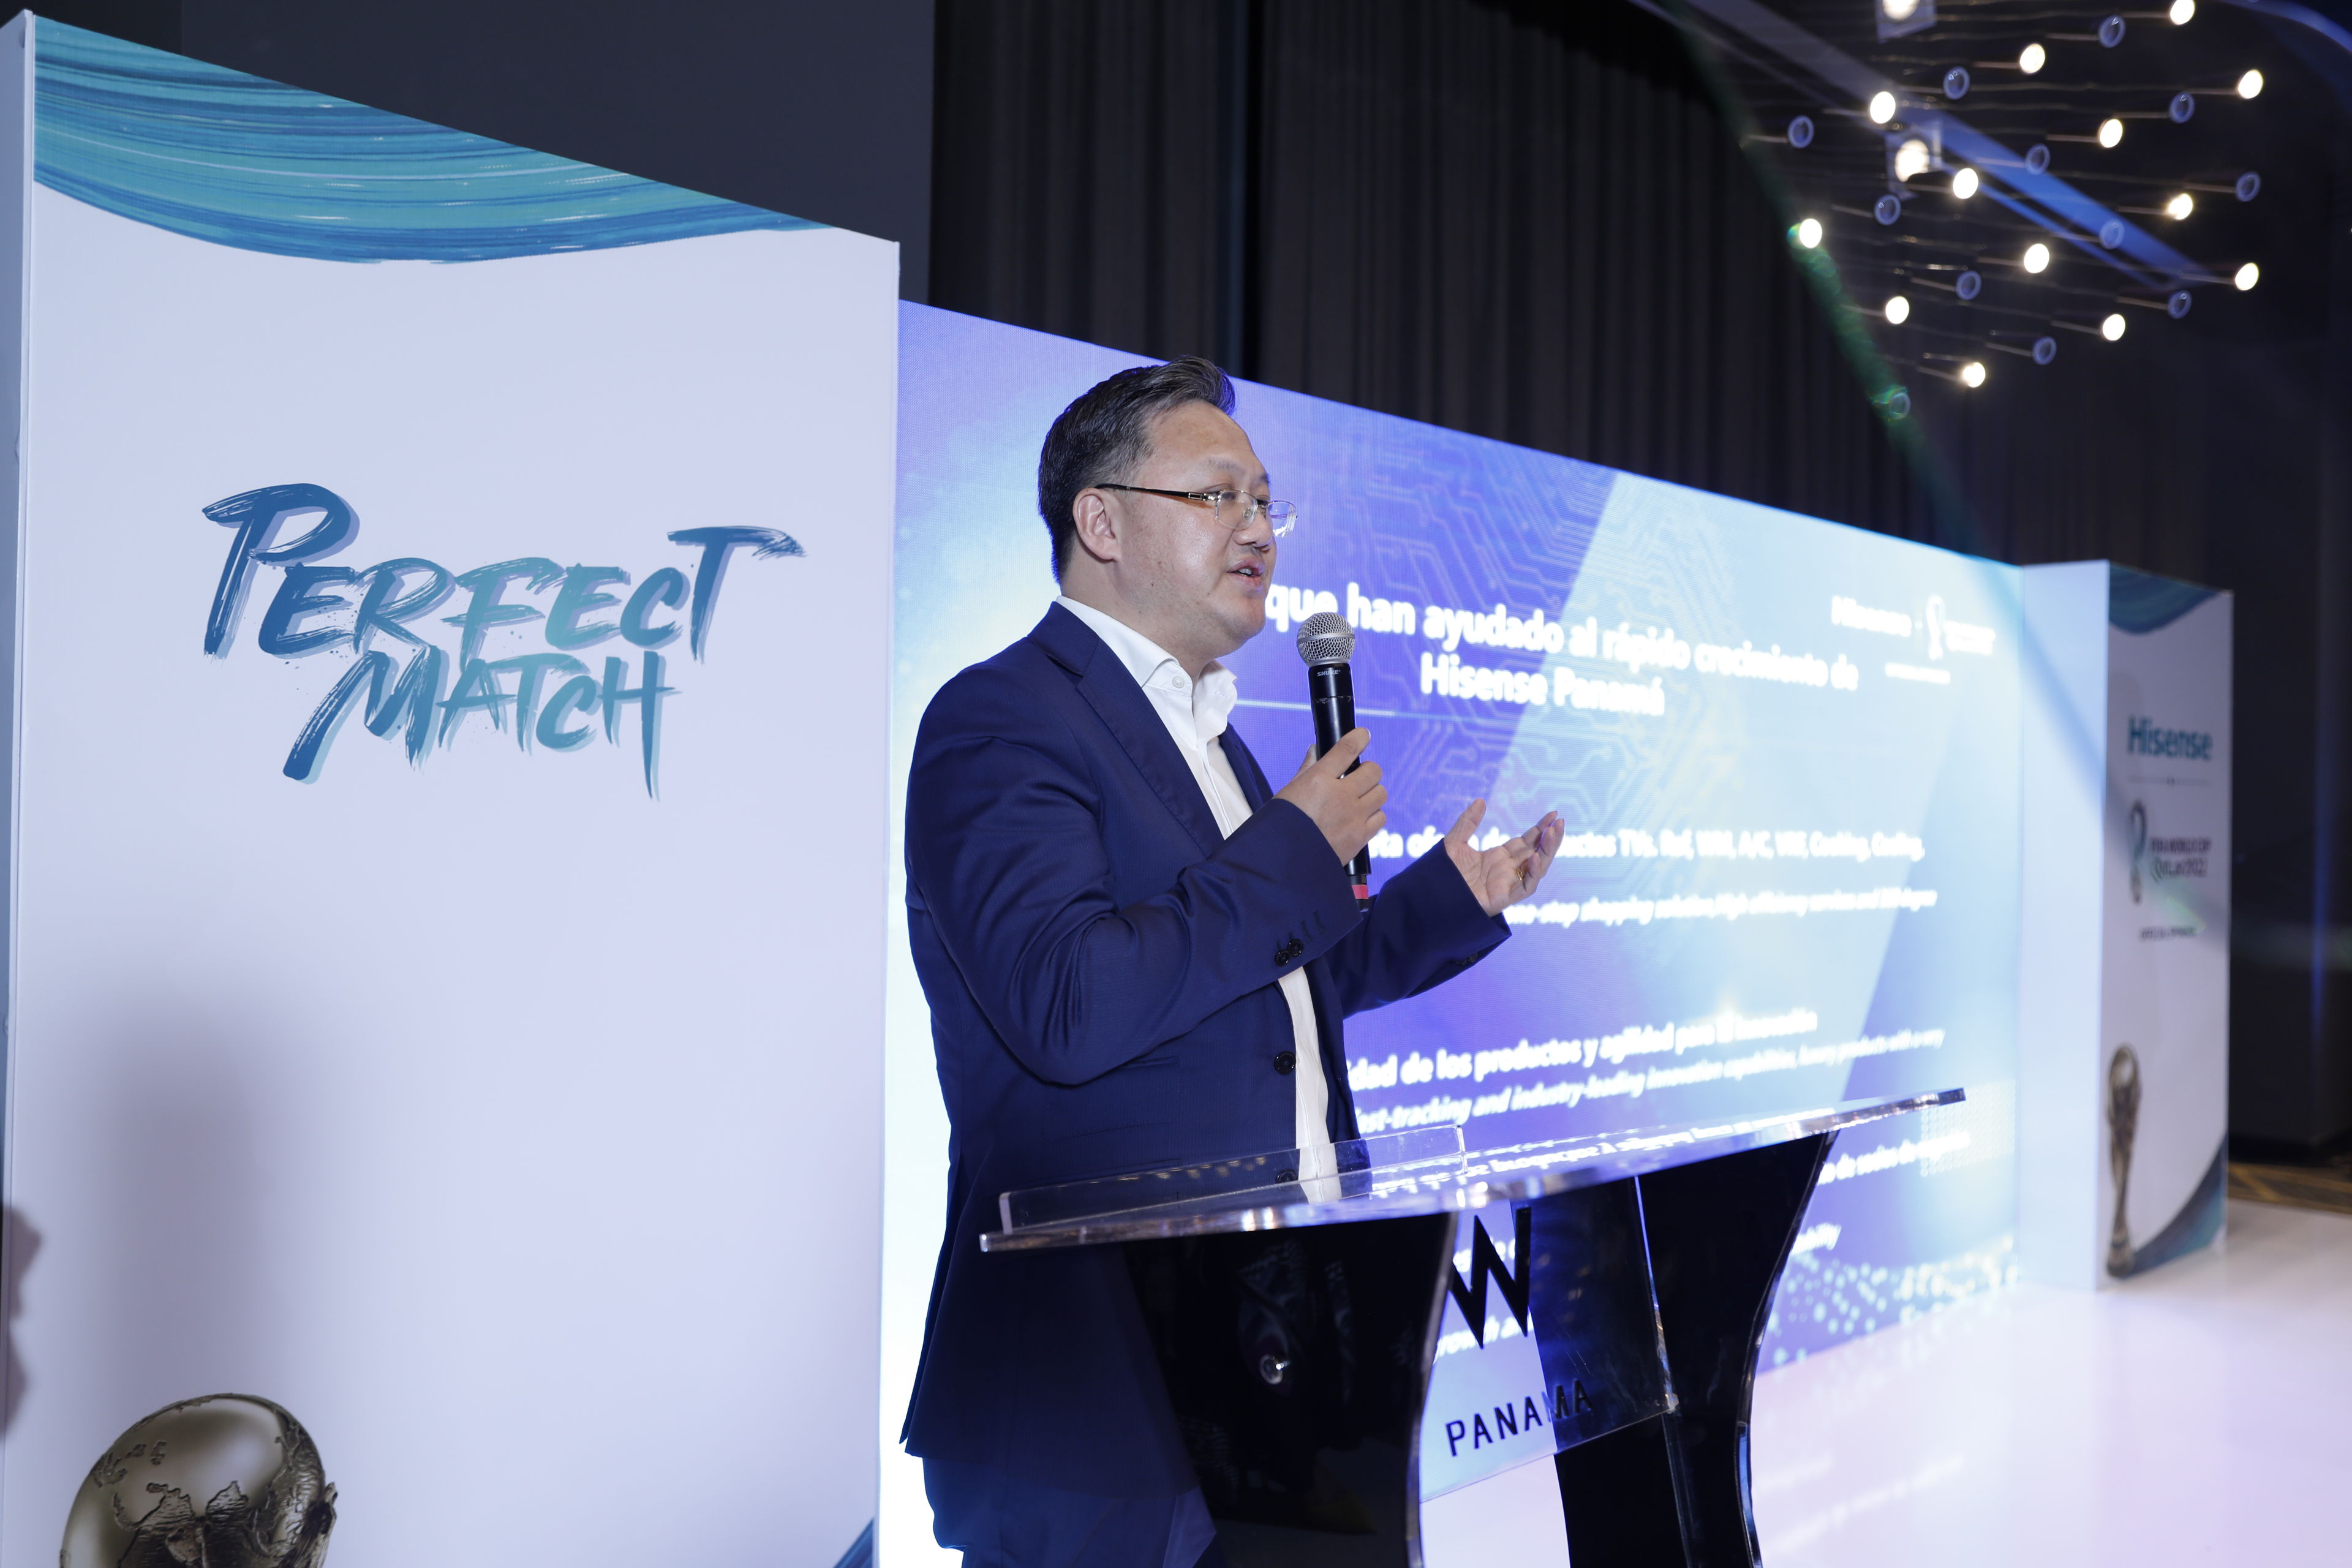 Hisense Centroamérica se posiciona como líder tecnológico en la región con el lanzamiento de “Perfect Match”